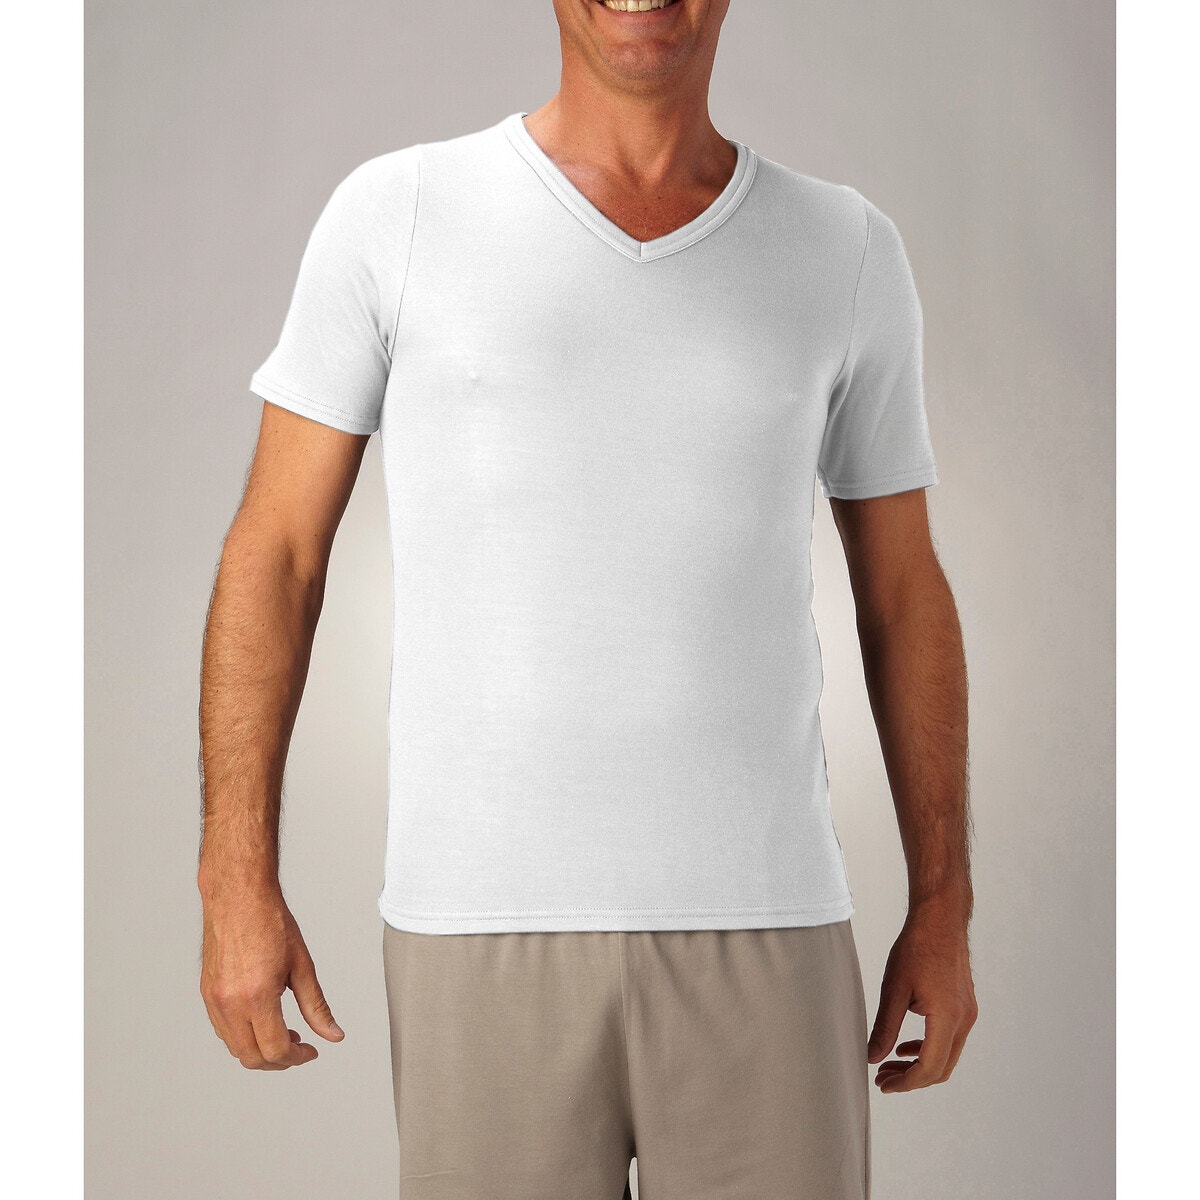 ΑΝΔΡΑΣ | Εσώρουχα | Φανελάκια Κοντομάνικη μπλούζα διπλής όψης με V λαιμόκοψη